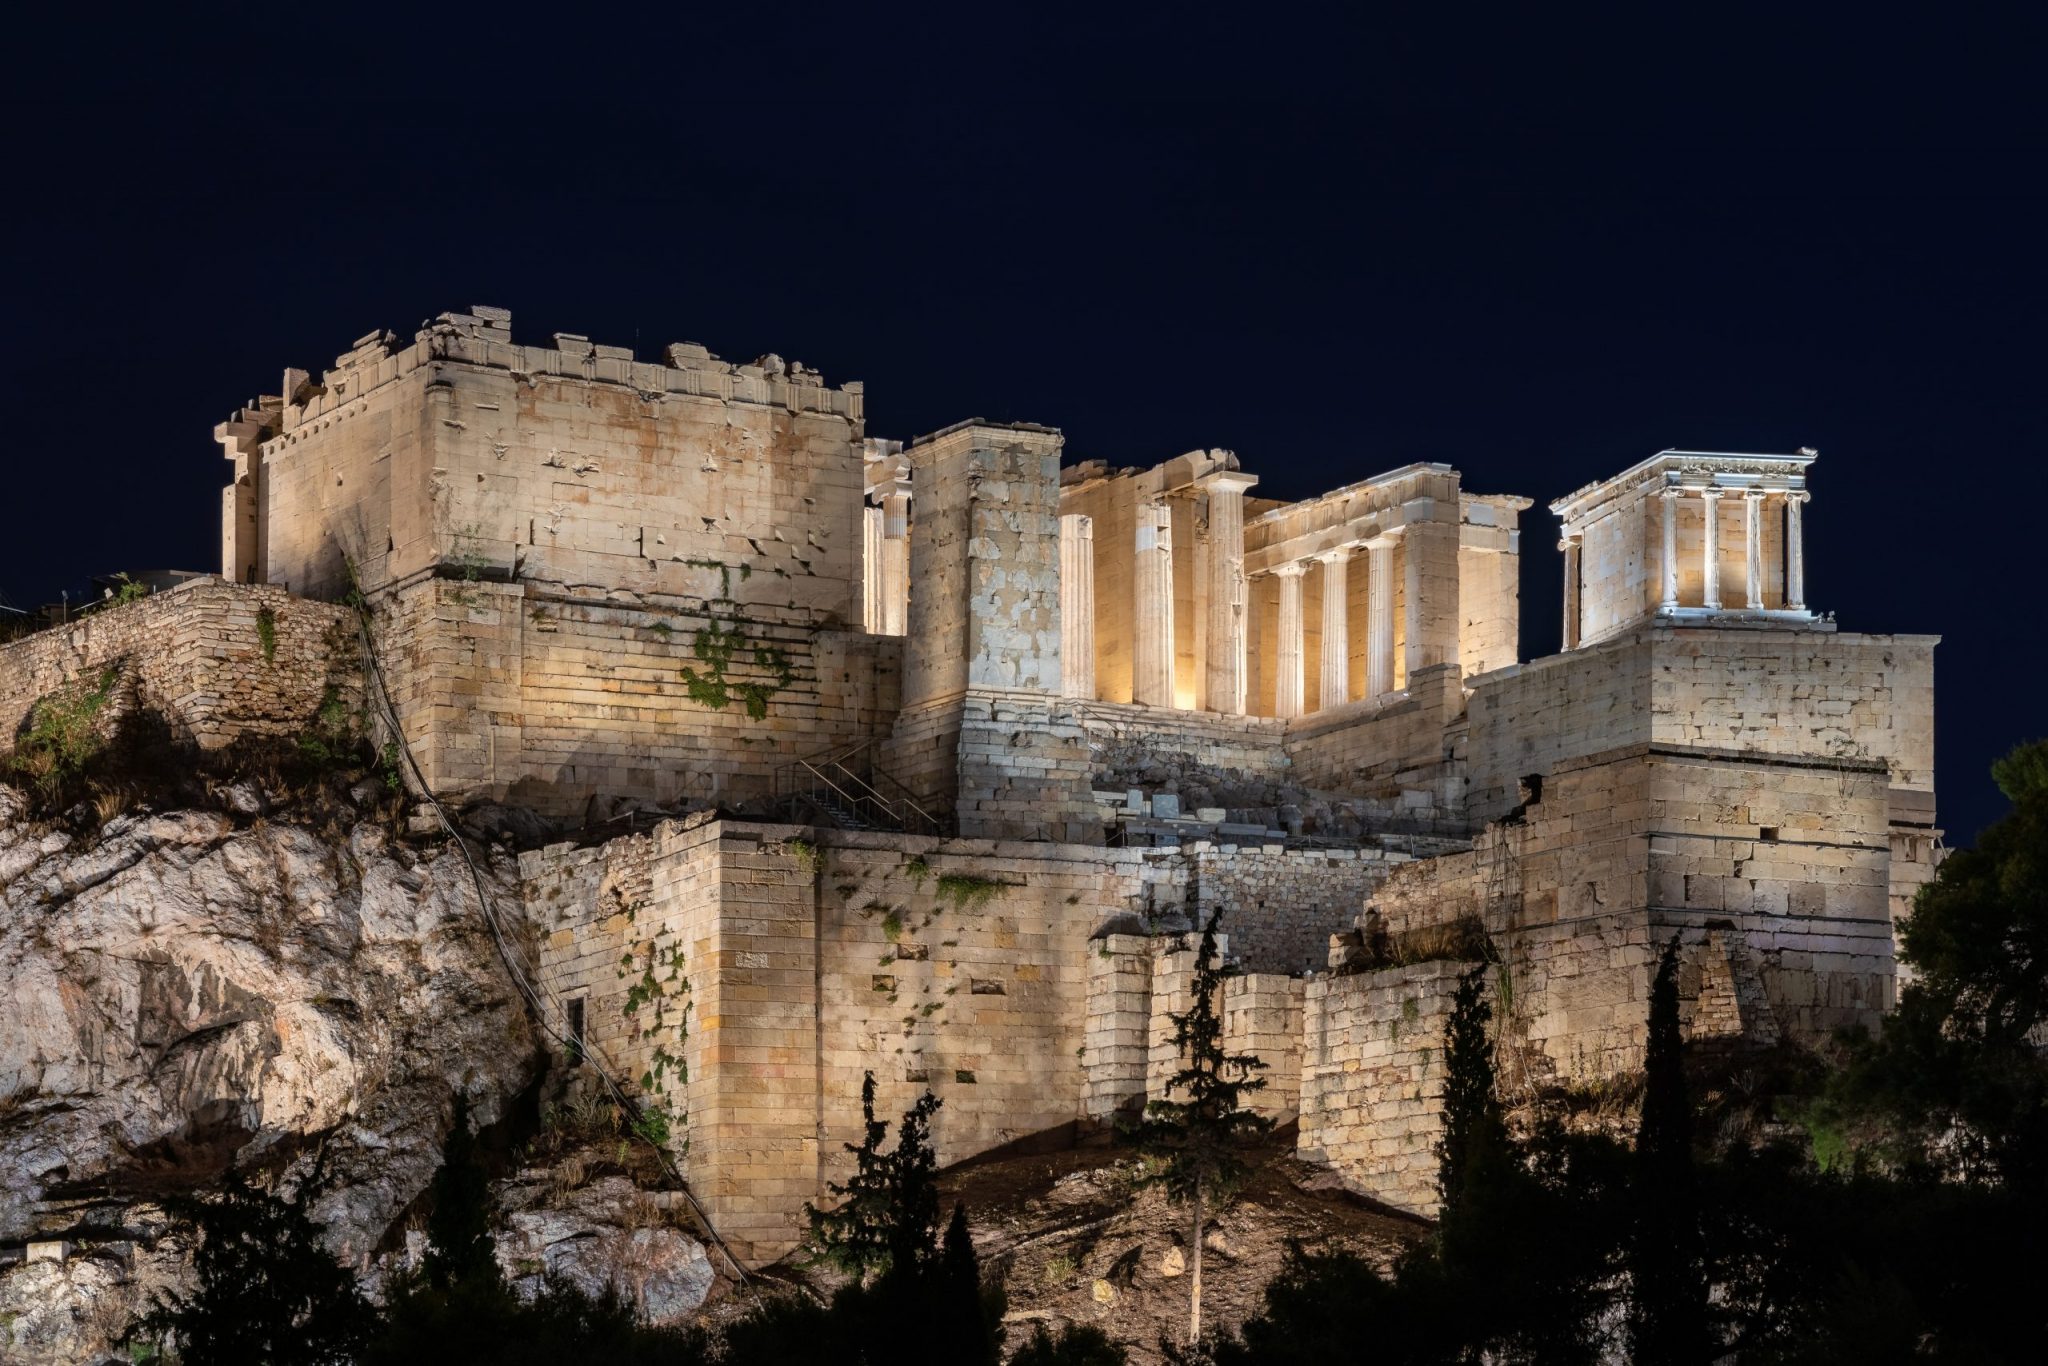 Η Ελευθερία Ντεκώ στο συνέδριο Greece Talks: Η έμπνευση πίσω από τον φωτισμό της Ακρόπολης